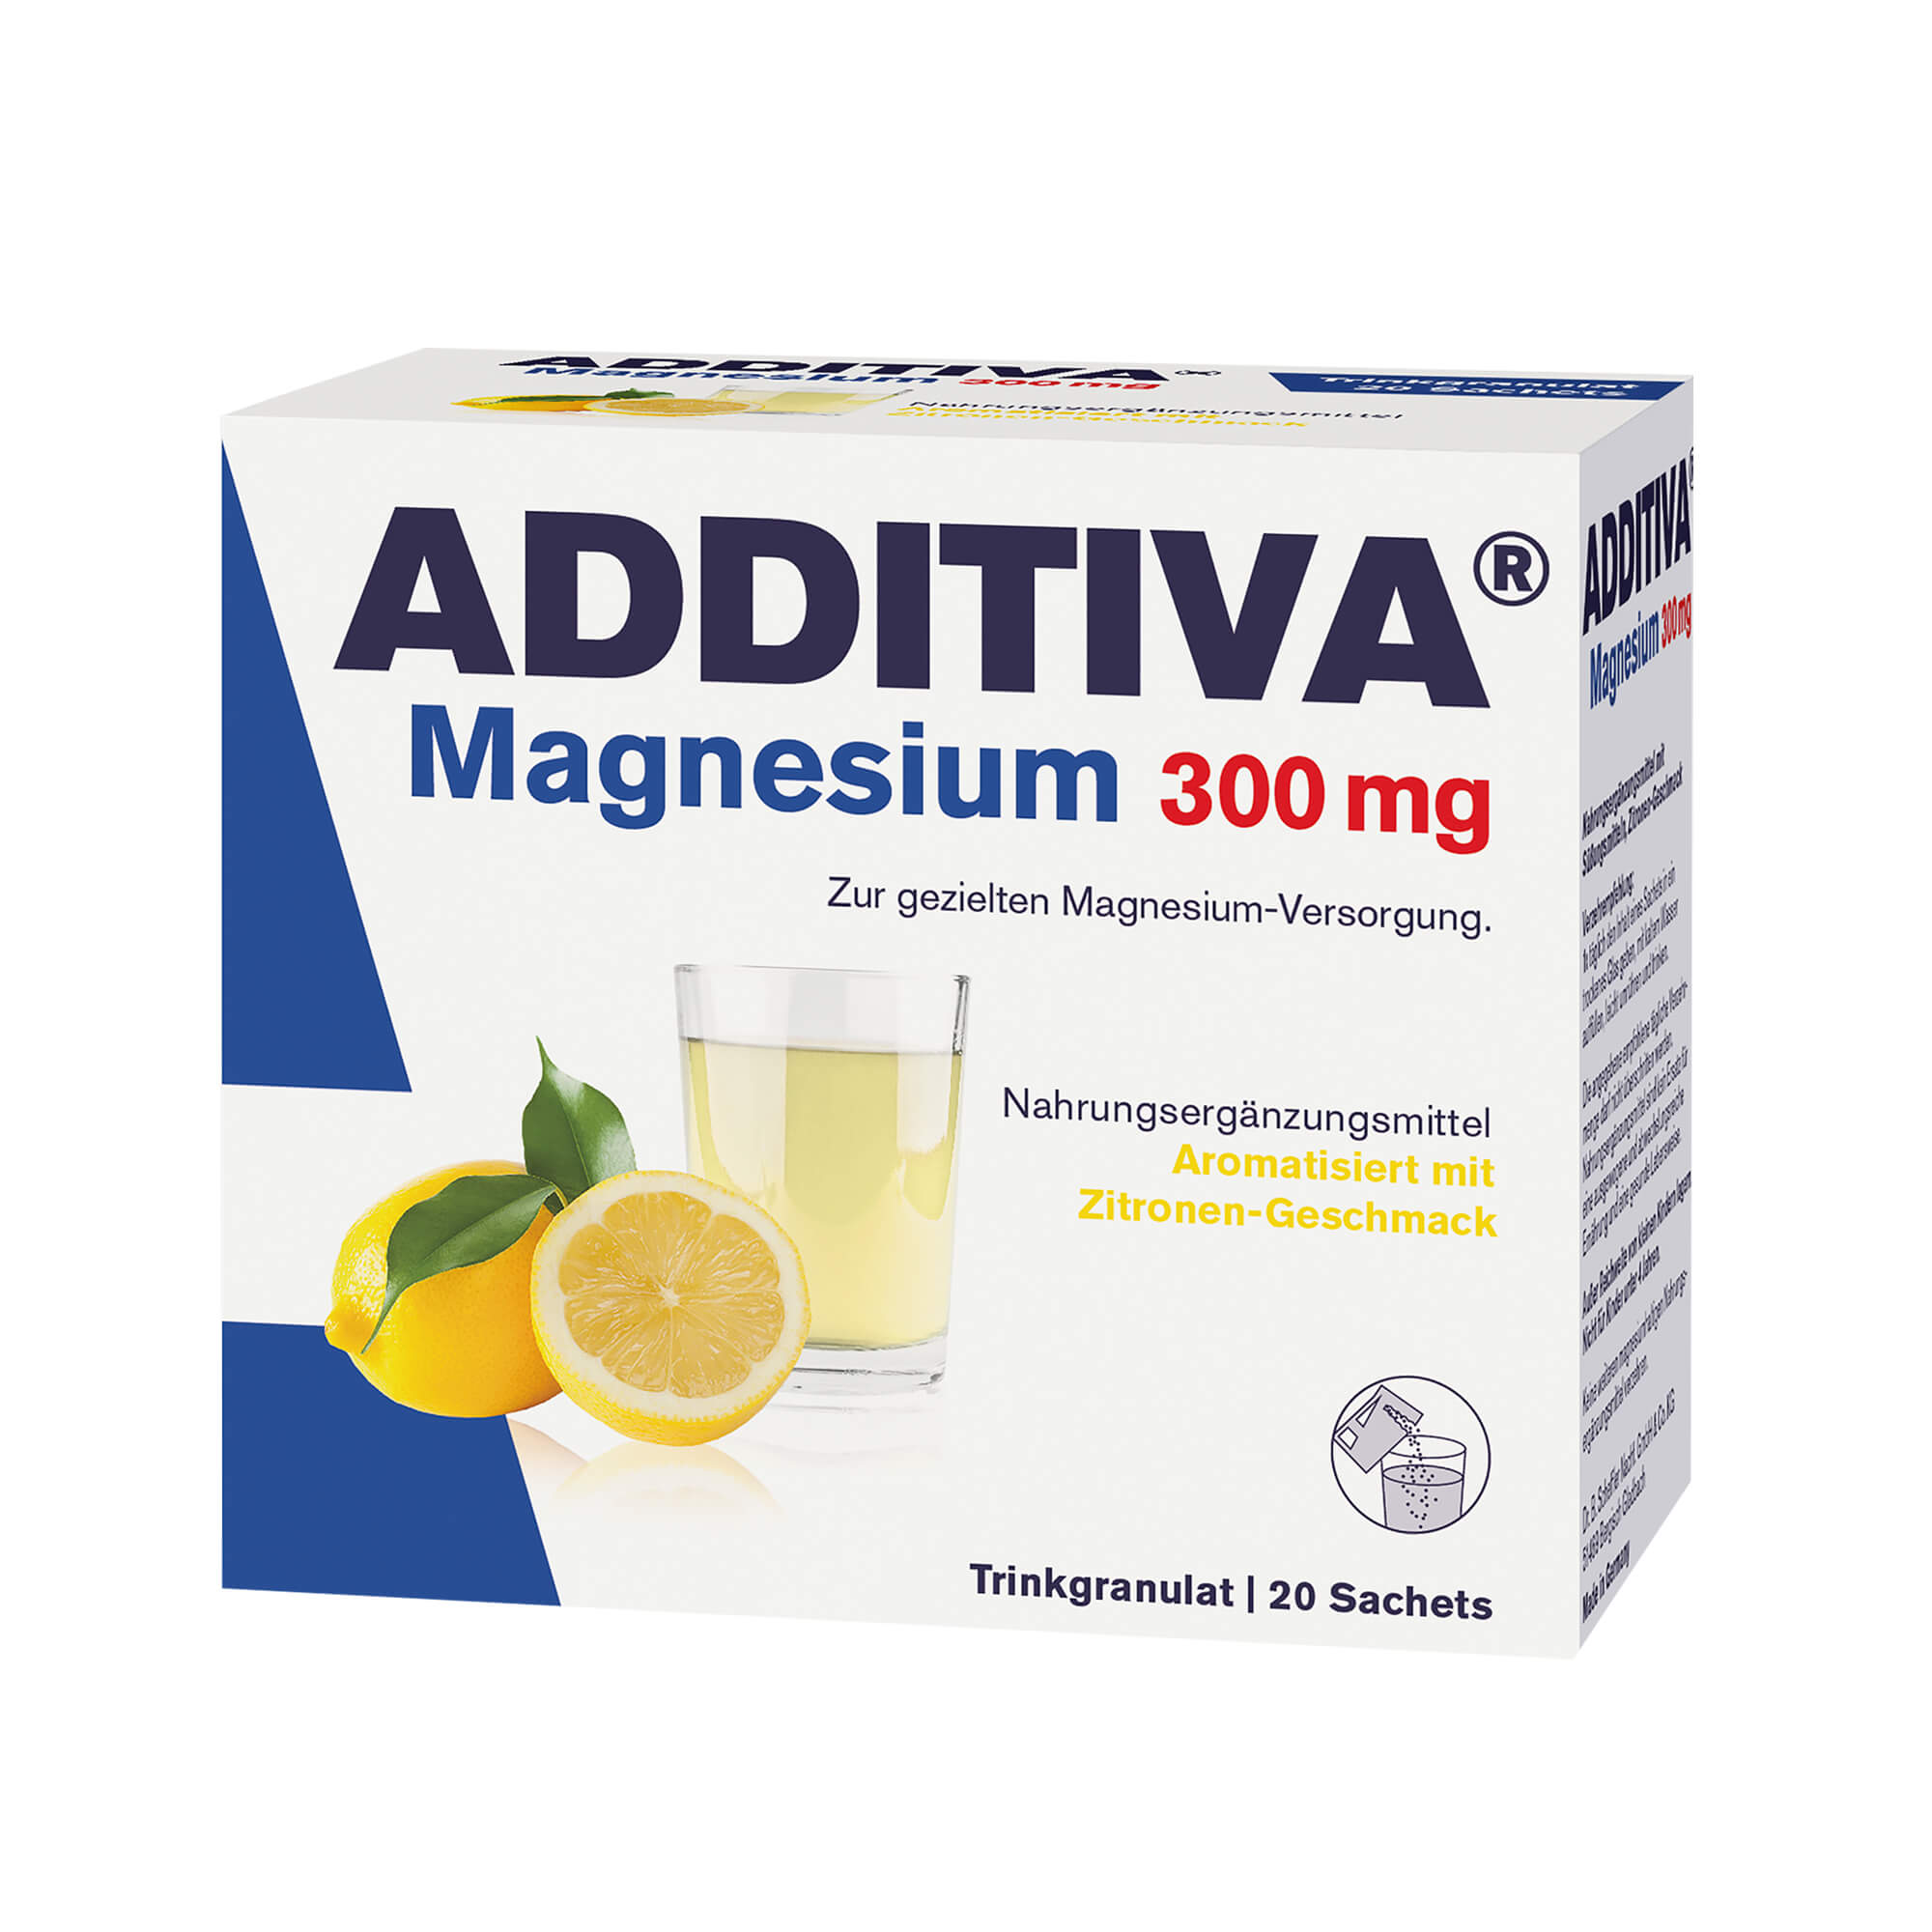 Nahrungsergänzungsmittel mit Magnesium. Aromatisiert mit Zitronengeschmack.